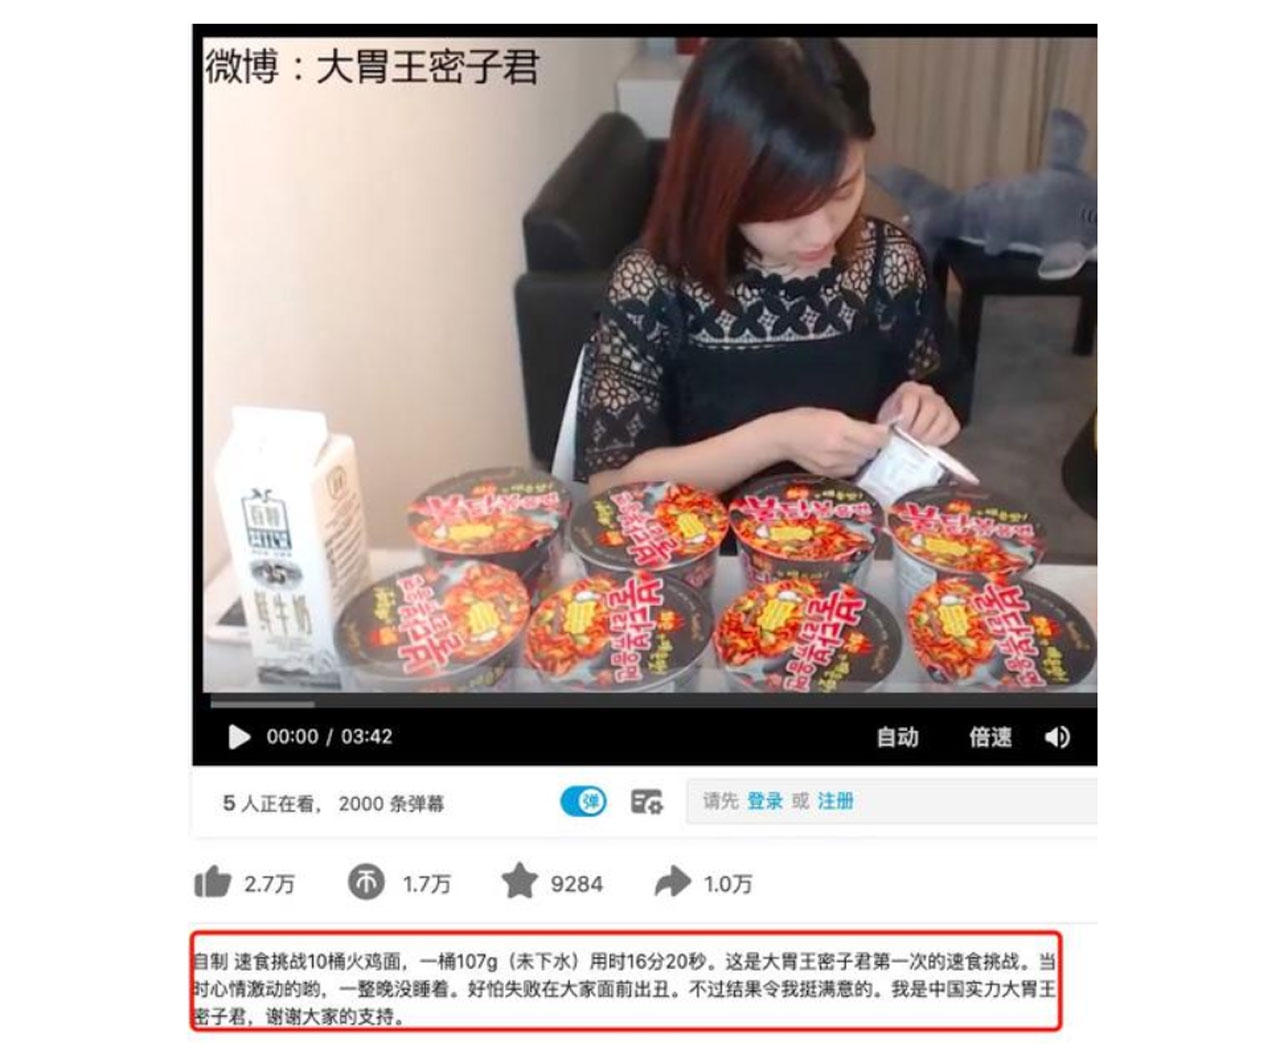 ▲라이브 방송에서 컵라면 먹방을 하는 중국 인터넷 방송인(사진: 시나 웨이보)